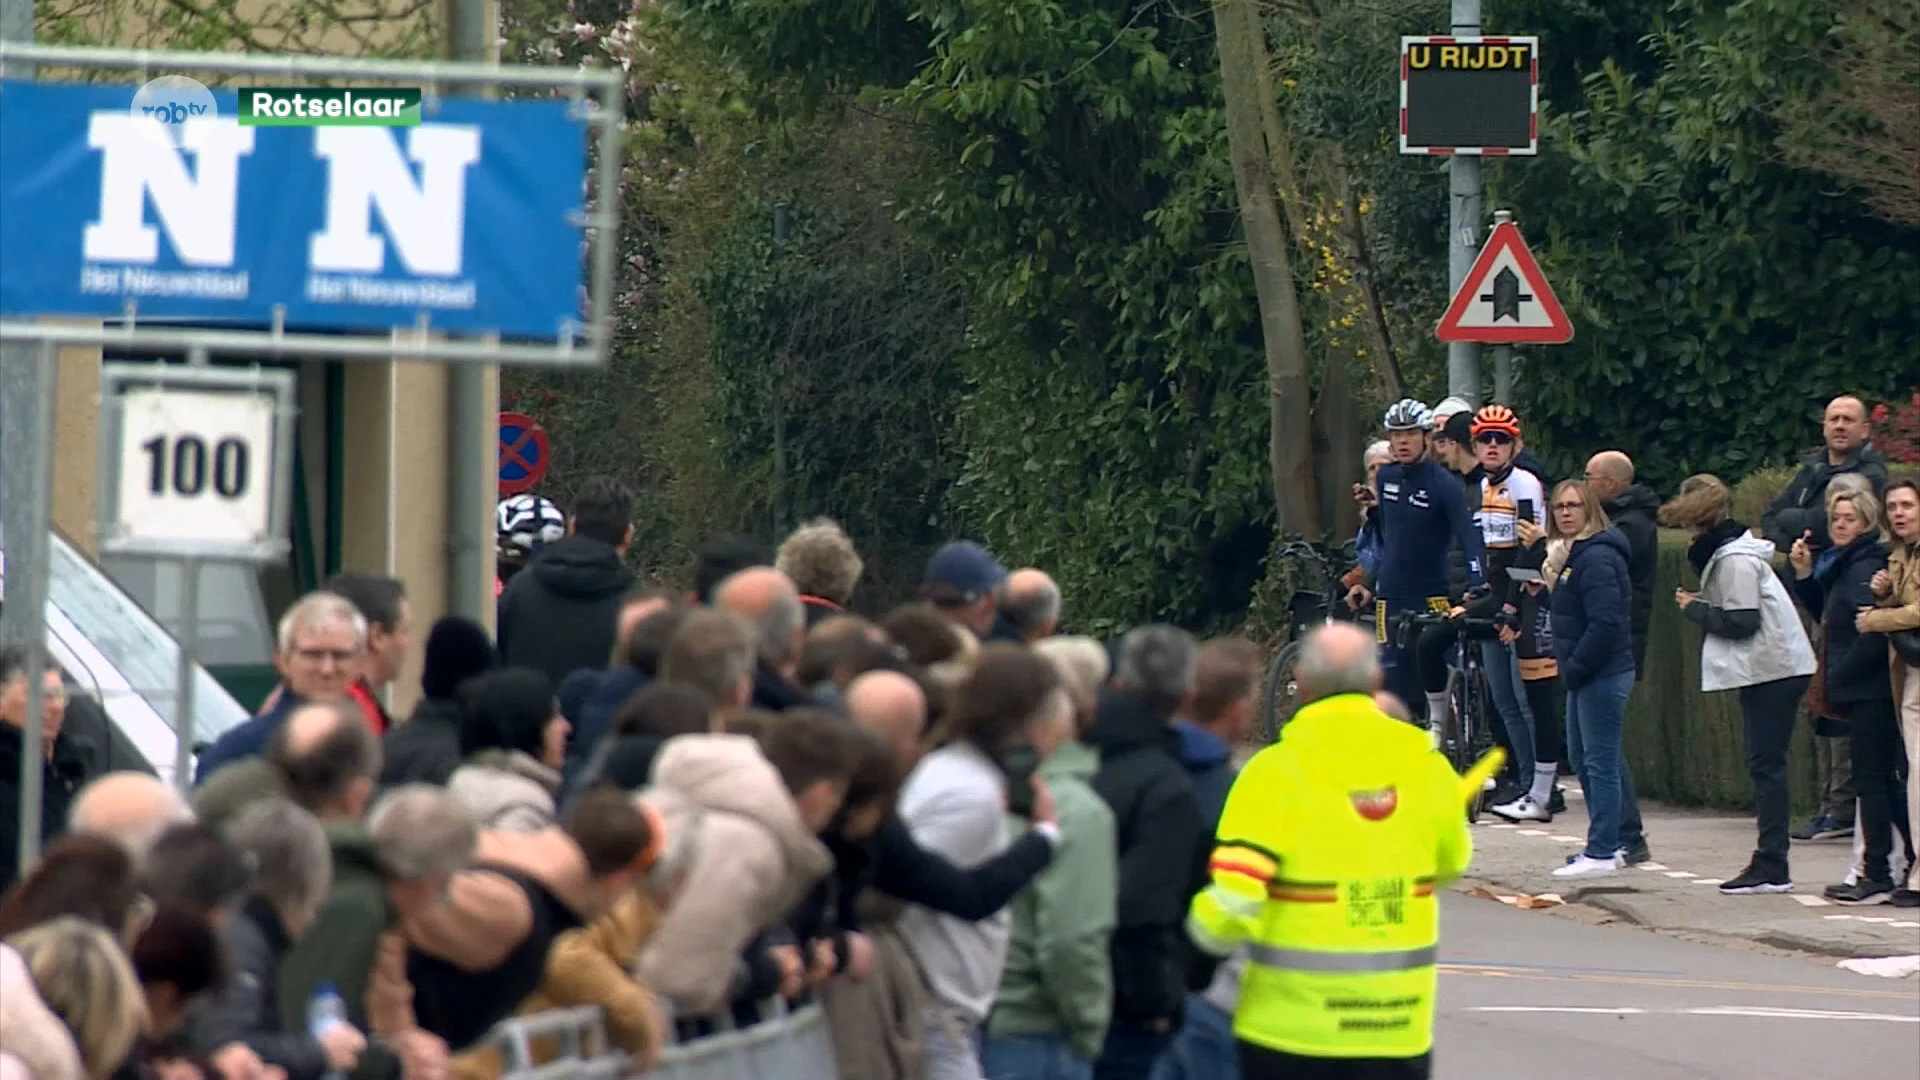 Beloftevolle Simon Dehairs uit Zoutleeuw wint GP Vermarc na indrukwekkende sprint: "Leuk om in eigen regio te winnen"